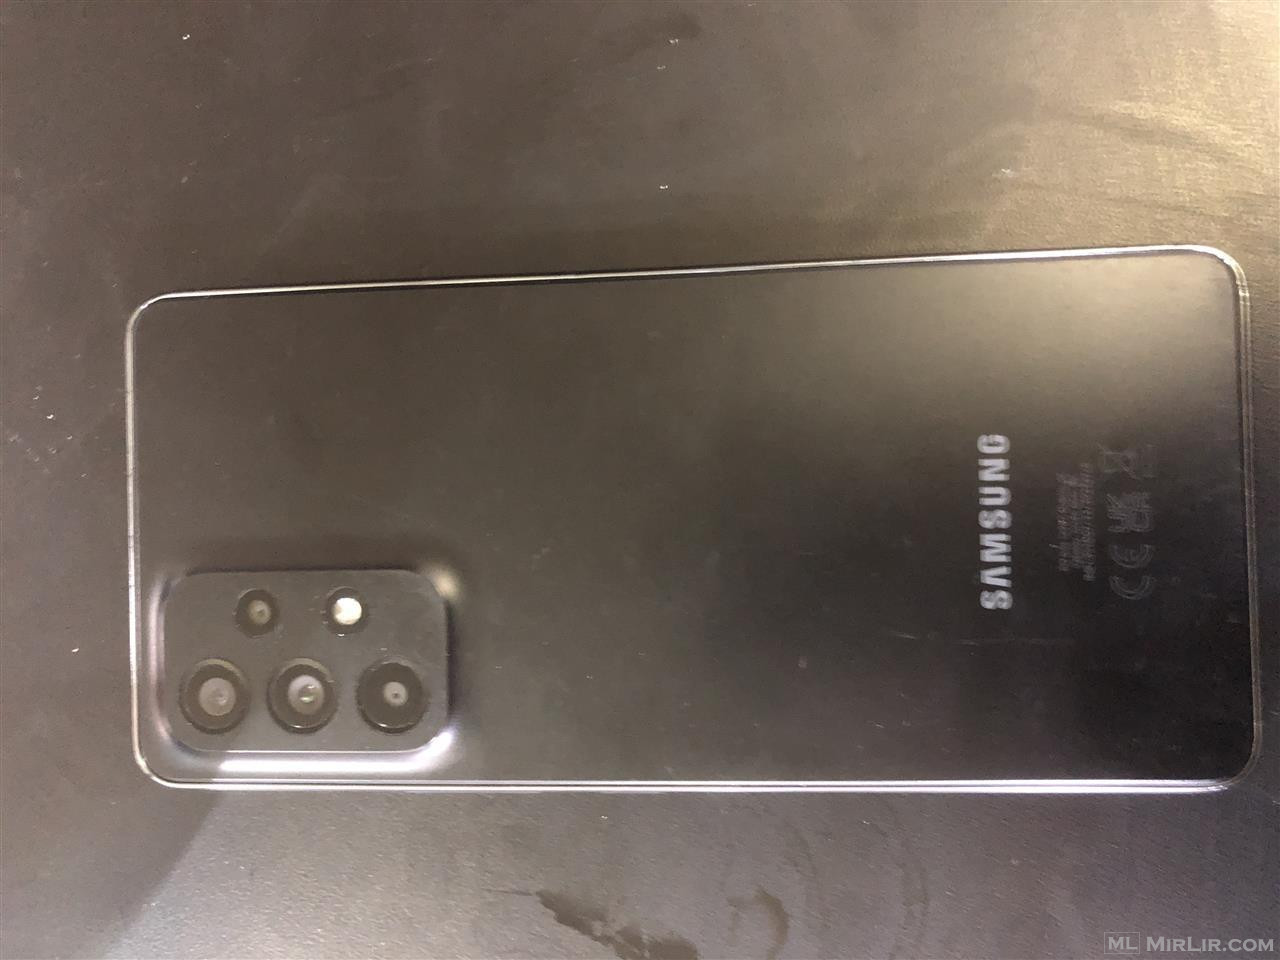 Samsung galaxy a53